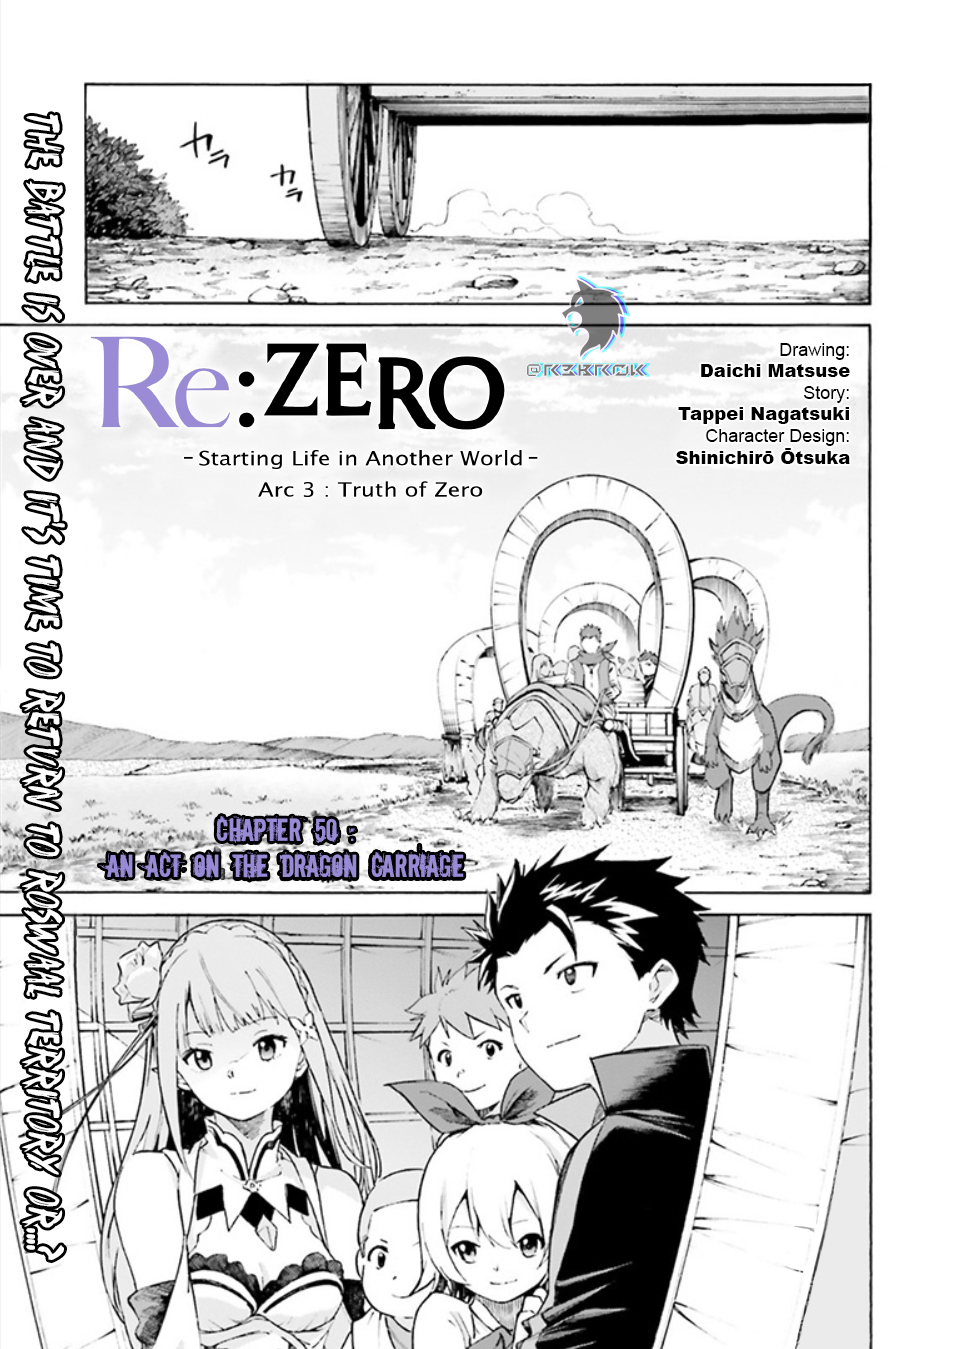 Re:Zero Kara Hajimeru Isekai Seikatsu Daisanshou Truth of Zero Vol. 11 Ch. 50 An Act on the Dragon Carriage